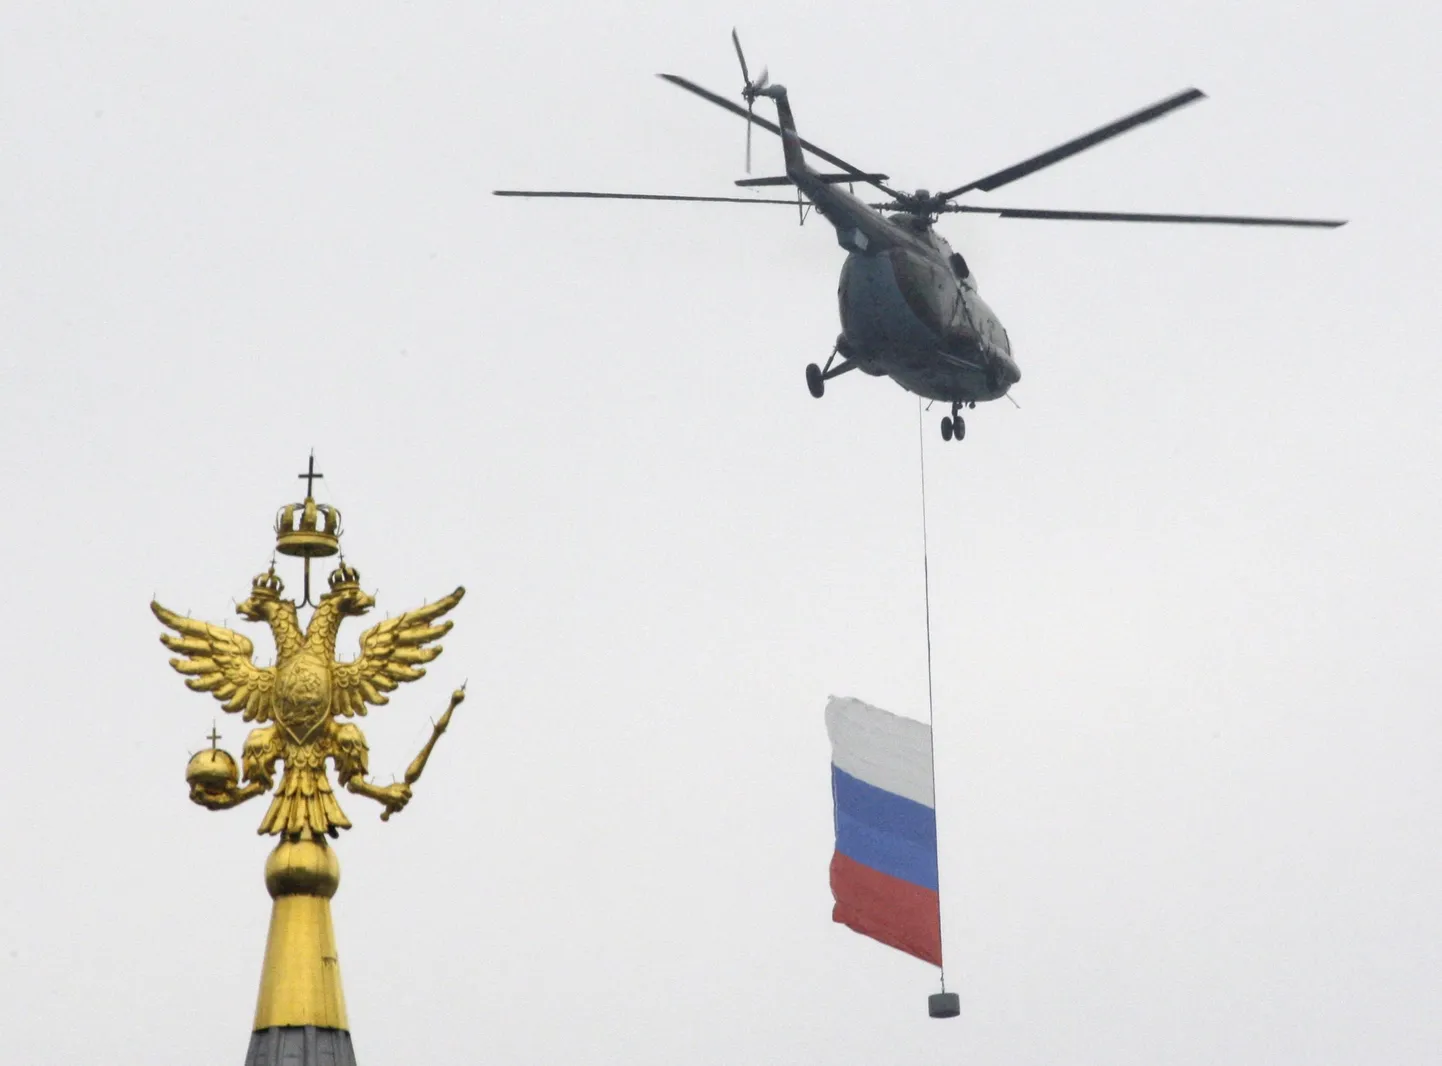 Vene riigilipuga helikopter lendab üle Moskva Punase väljaku.